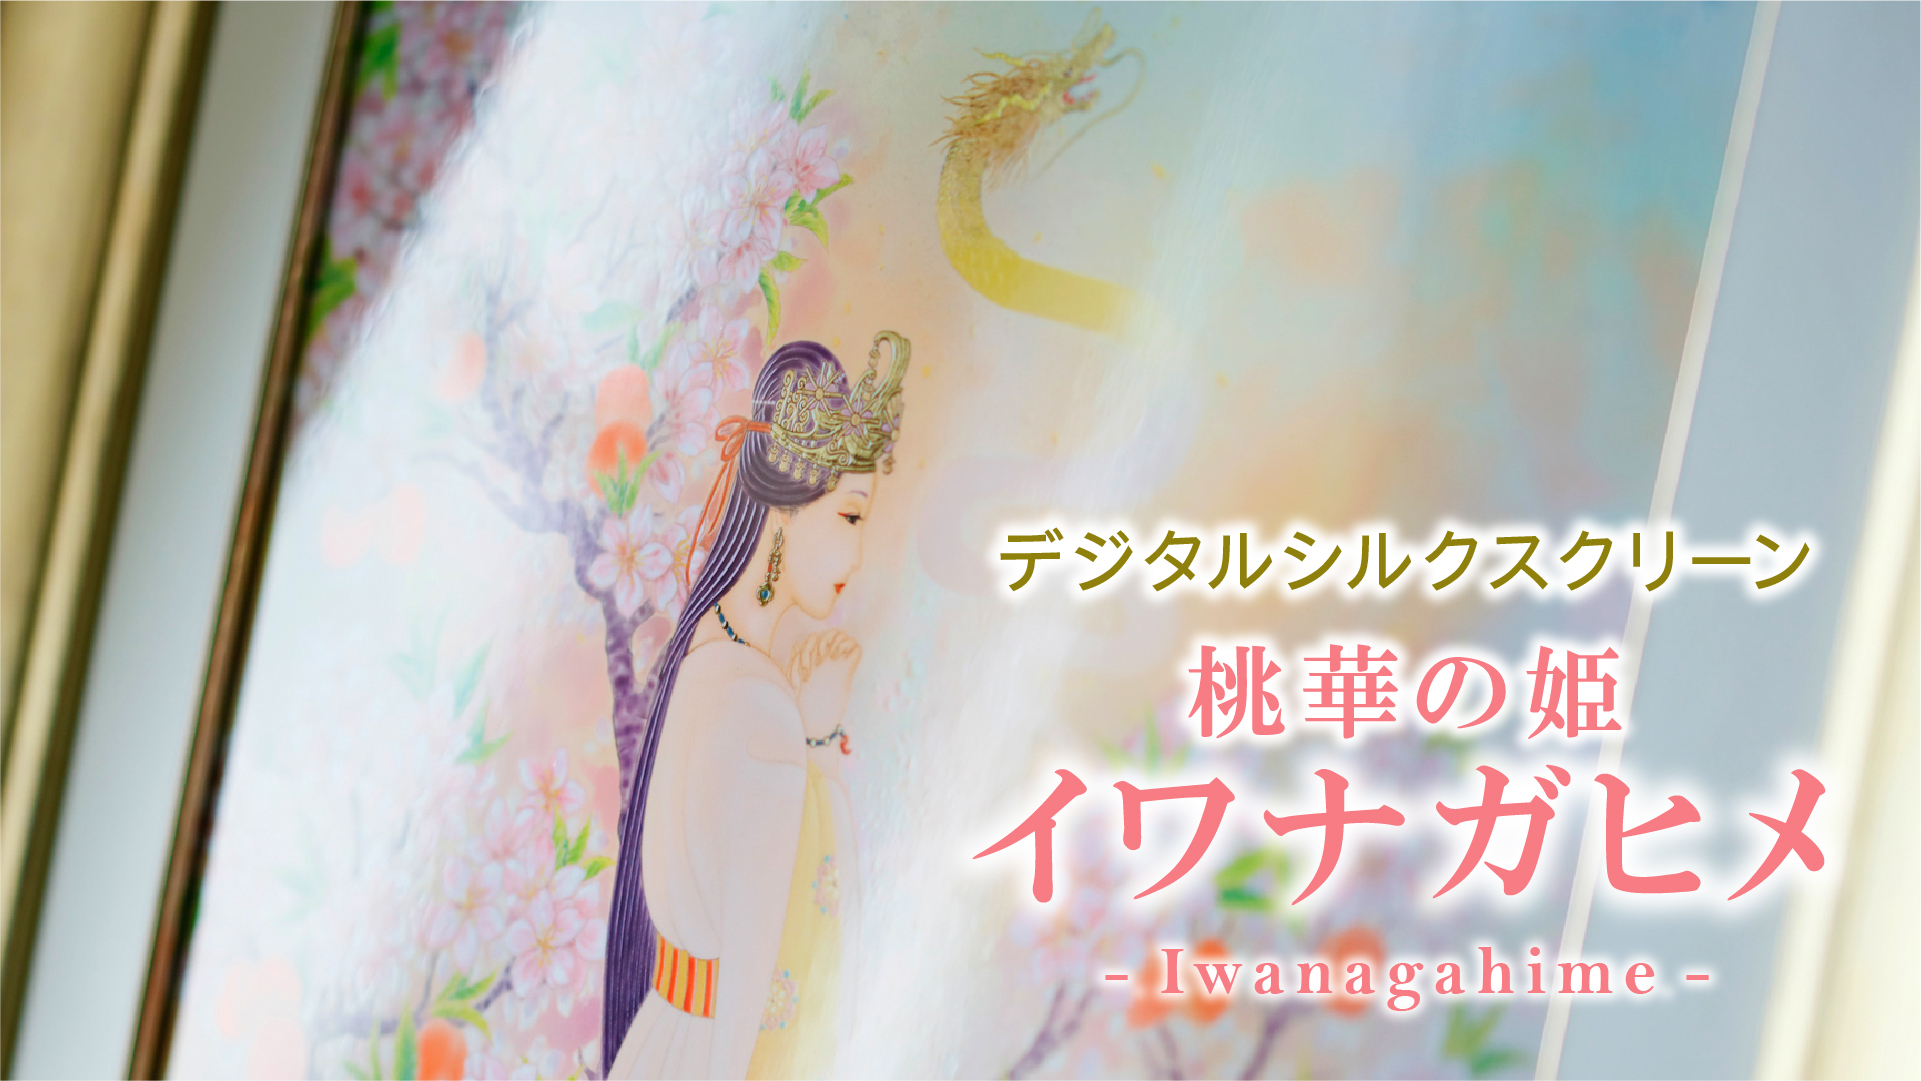 デジタルシルクスクリーン「桃華の姫 イワナガヒメ」